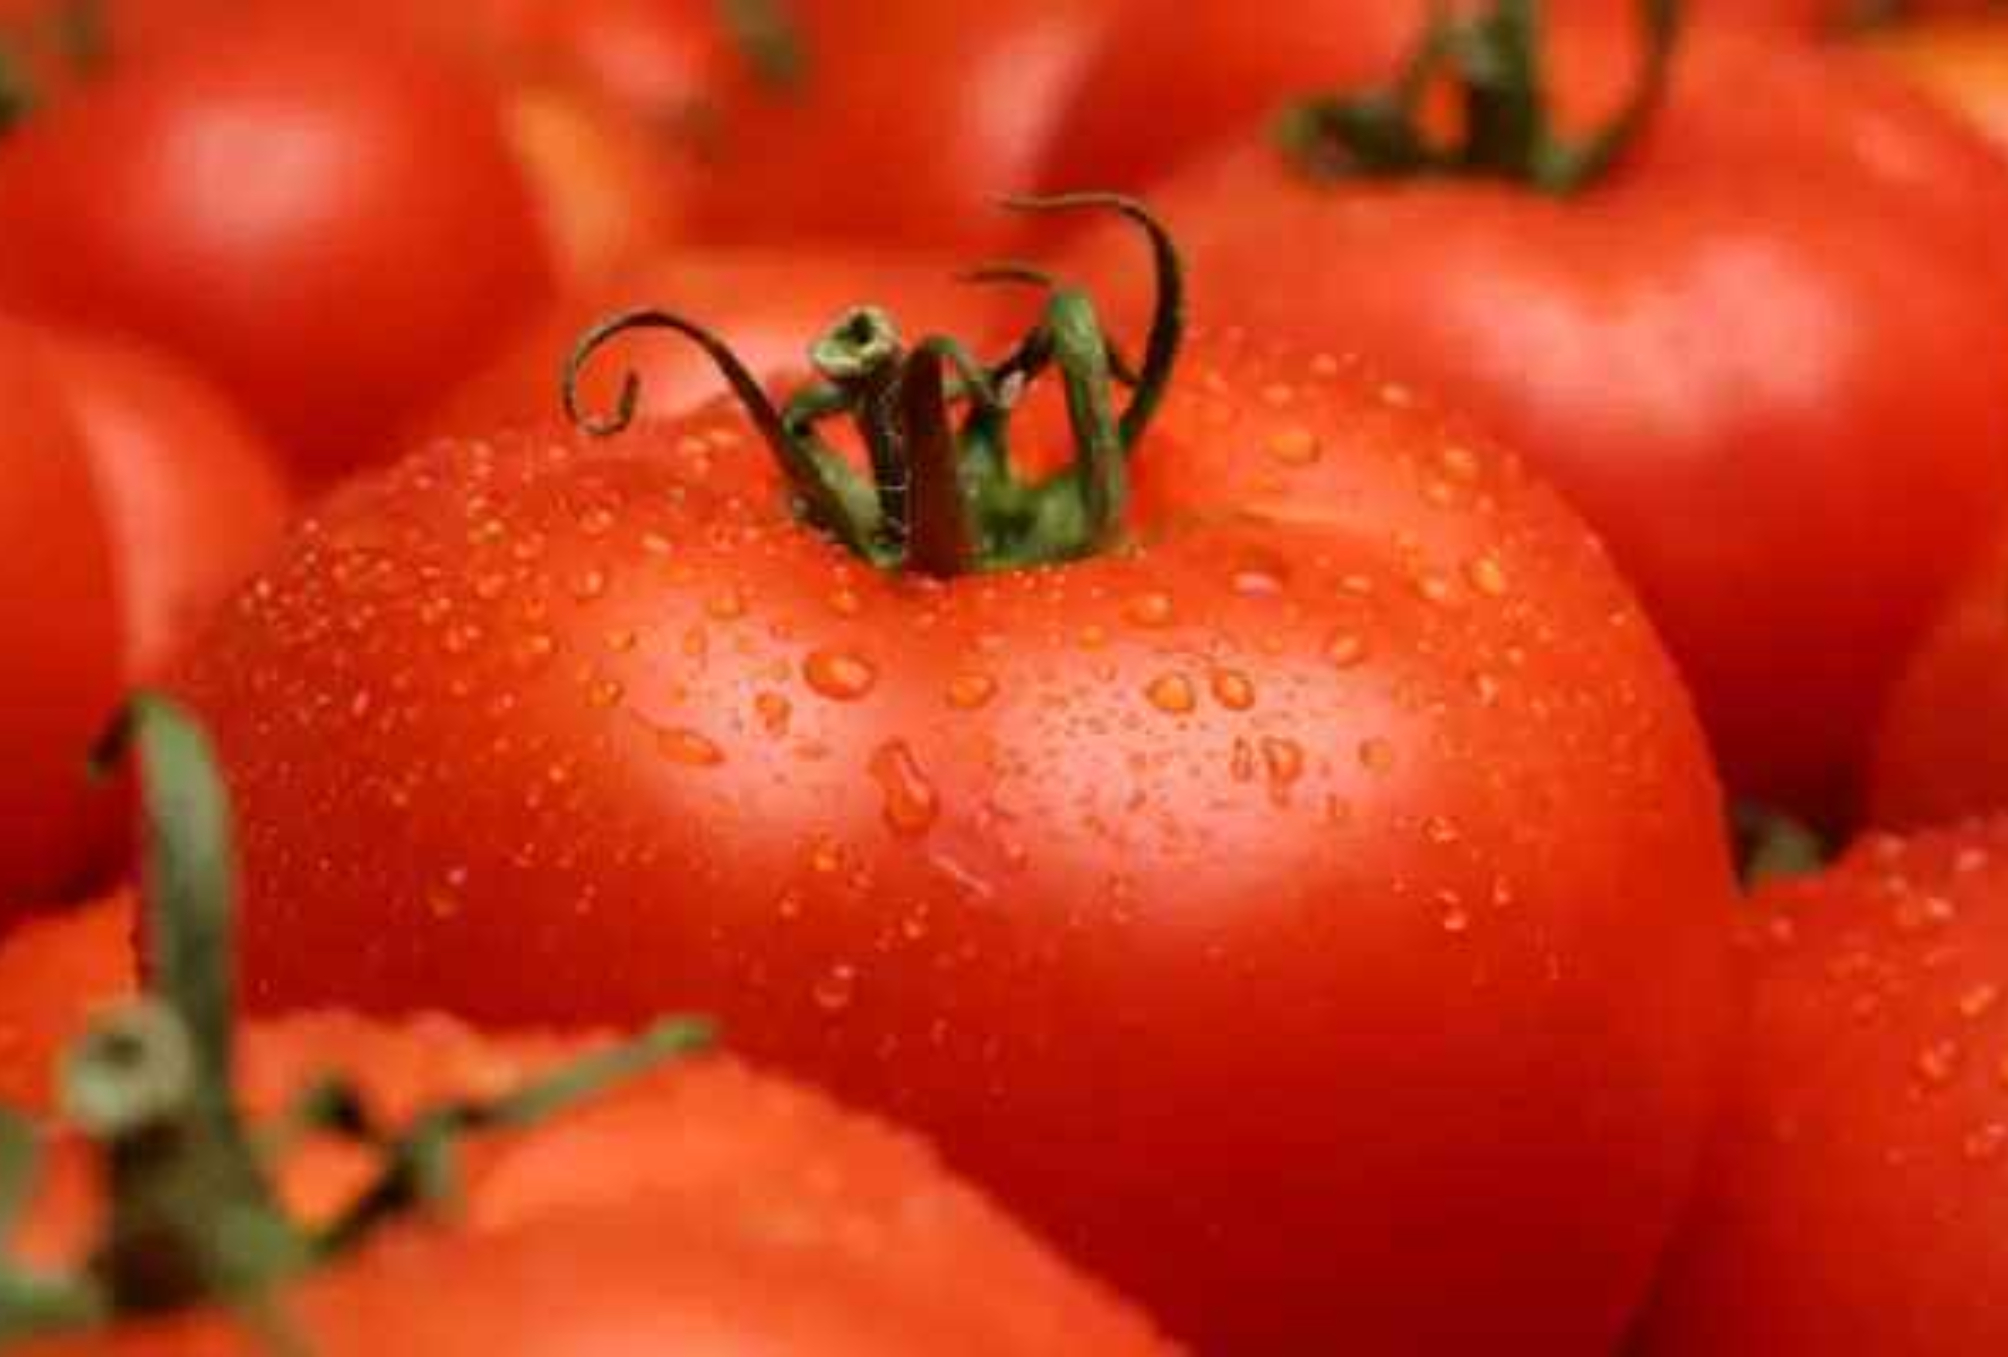 Ντομάτα: Η διατροφική αξία της και πως βοηθάει τον οργανισμό